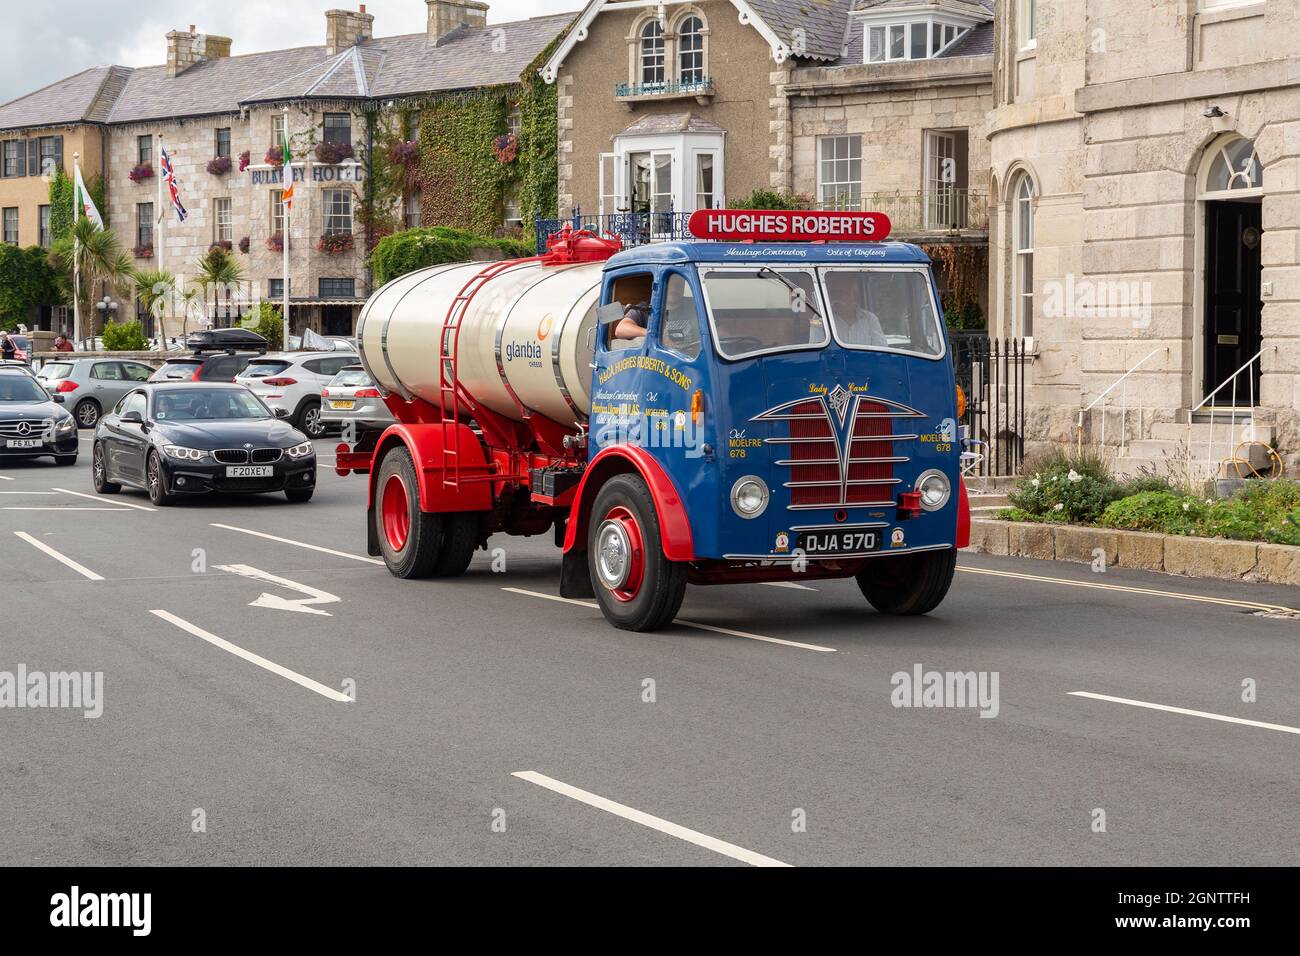 Beaumaris, pays de Galles: Hefin Hughes-Roberts Foden Milk Tanker, passant par l'hôtel Bulkeley après le rallye d'époque Anglesey 2021. Banque D'Images